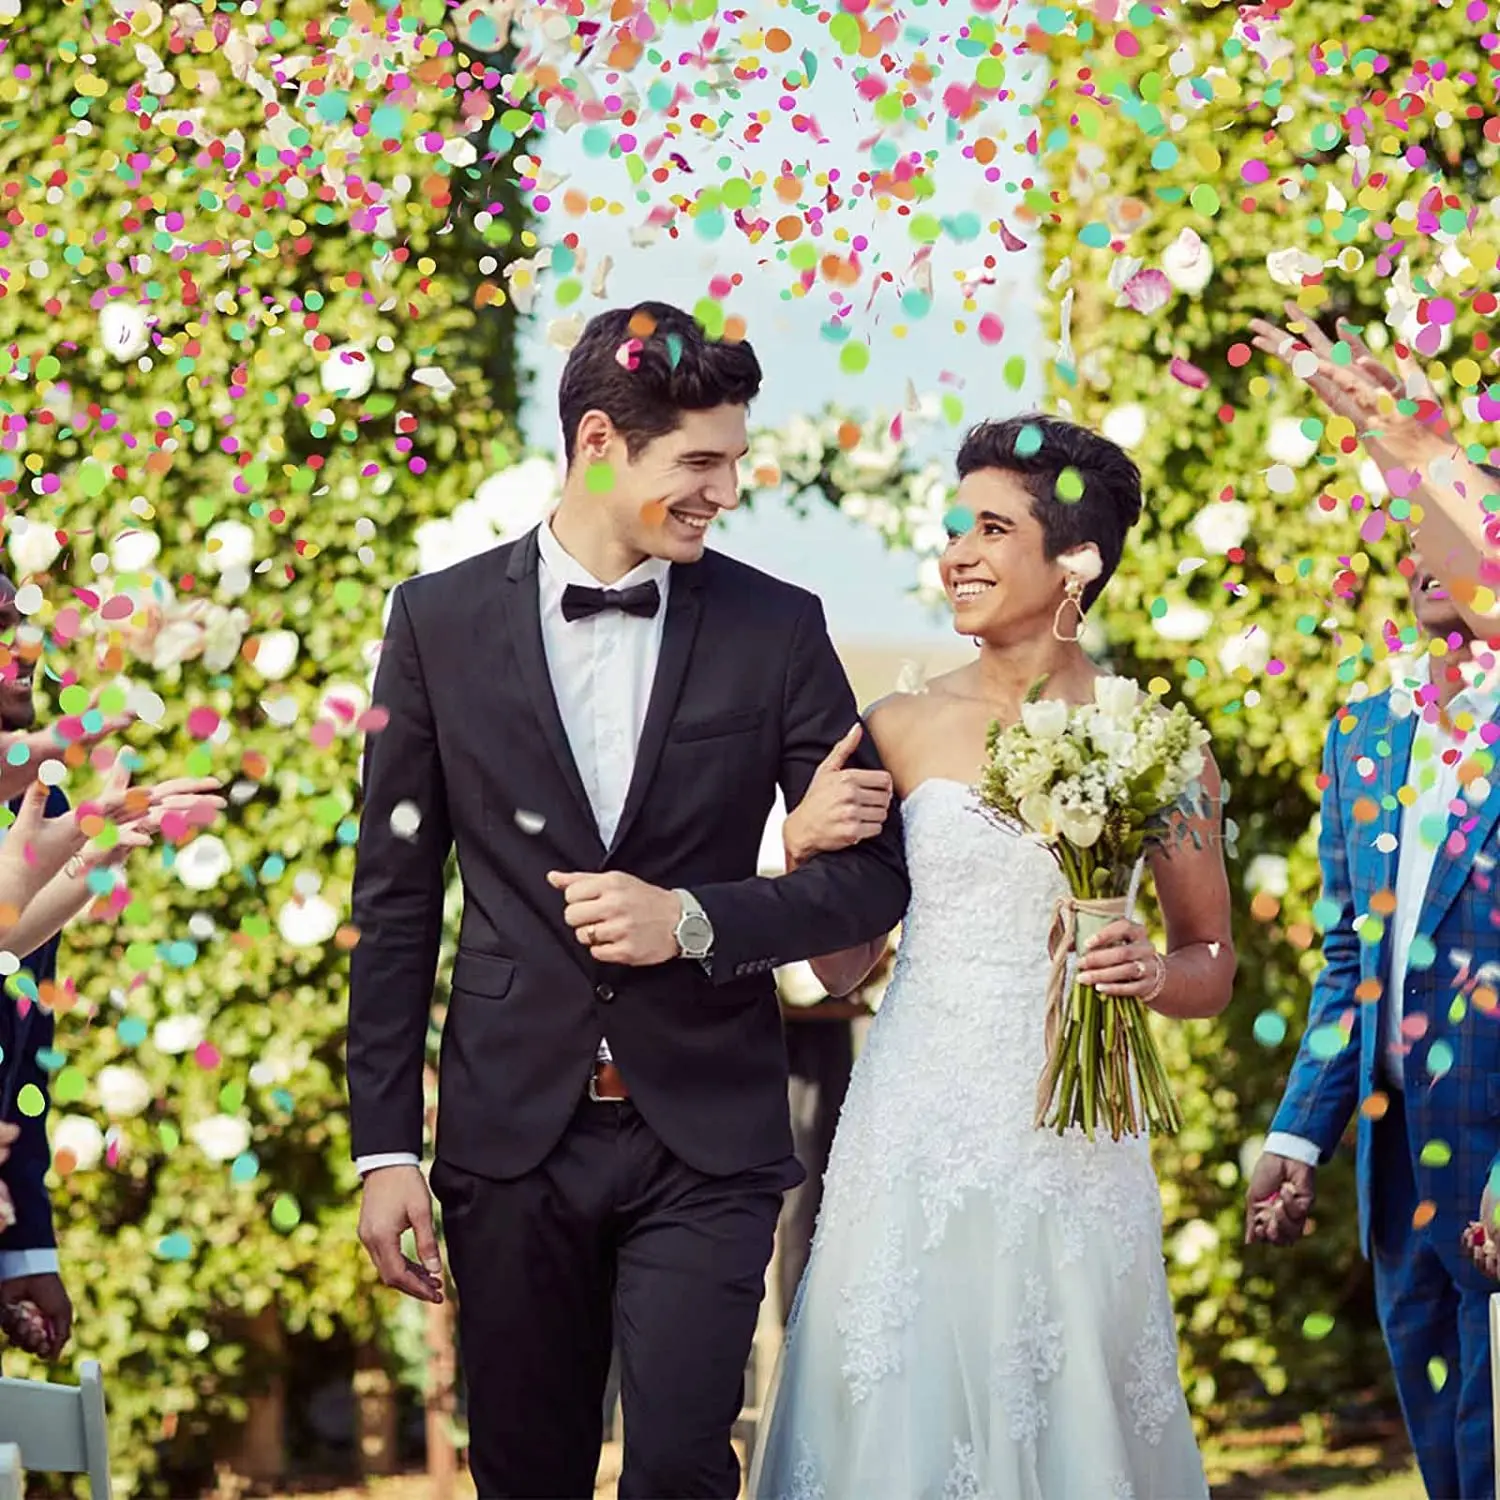 Comment faire un lanceur de confettis pour célébration de mariage ?